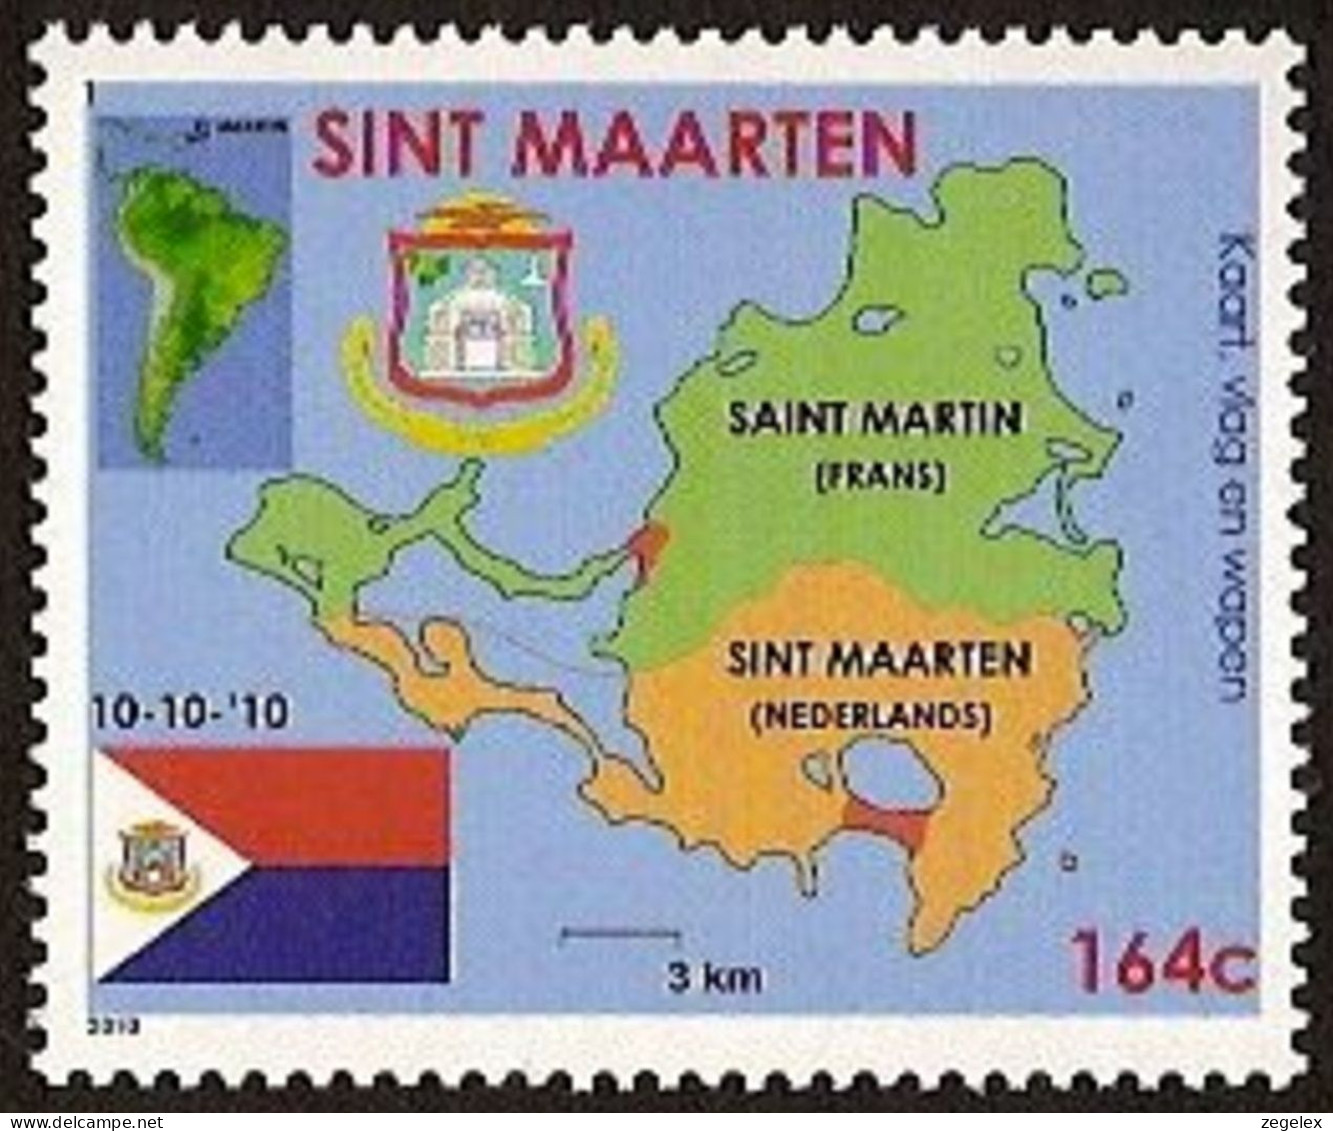 Sint Maarten 2010 Wapen, Vlag, Landkaart NVPH SM-001 MNH ** Postfrisch - Curacao, Netherlands Antilles, Aruba